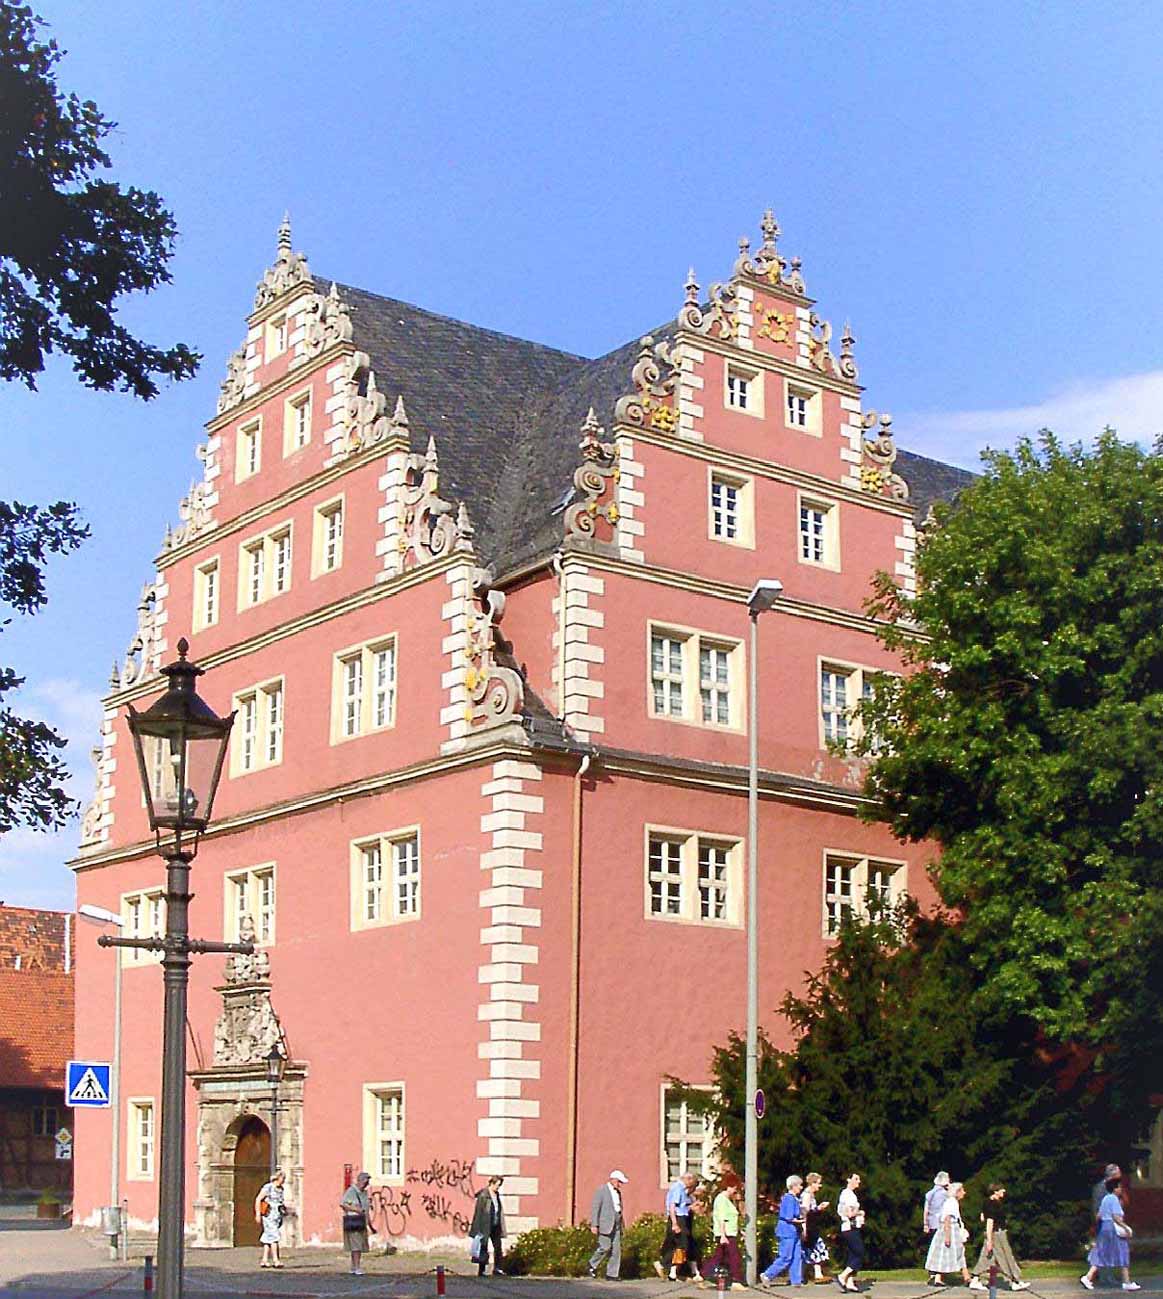 Das Zeughaus in Wolfenbüttel. Errichtet in den Jahren 1613-1617 vom Herzoglichen Baumeister Paul Francke. Damalige Verwendung für Waffenarsenal und als Kaserne, heute als Forschungsbibliothek.